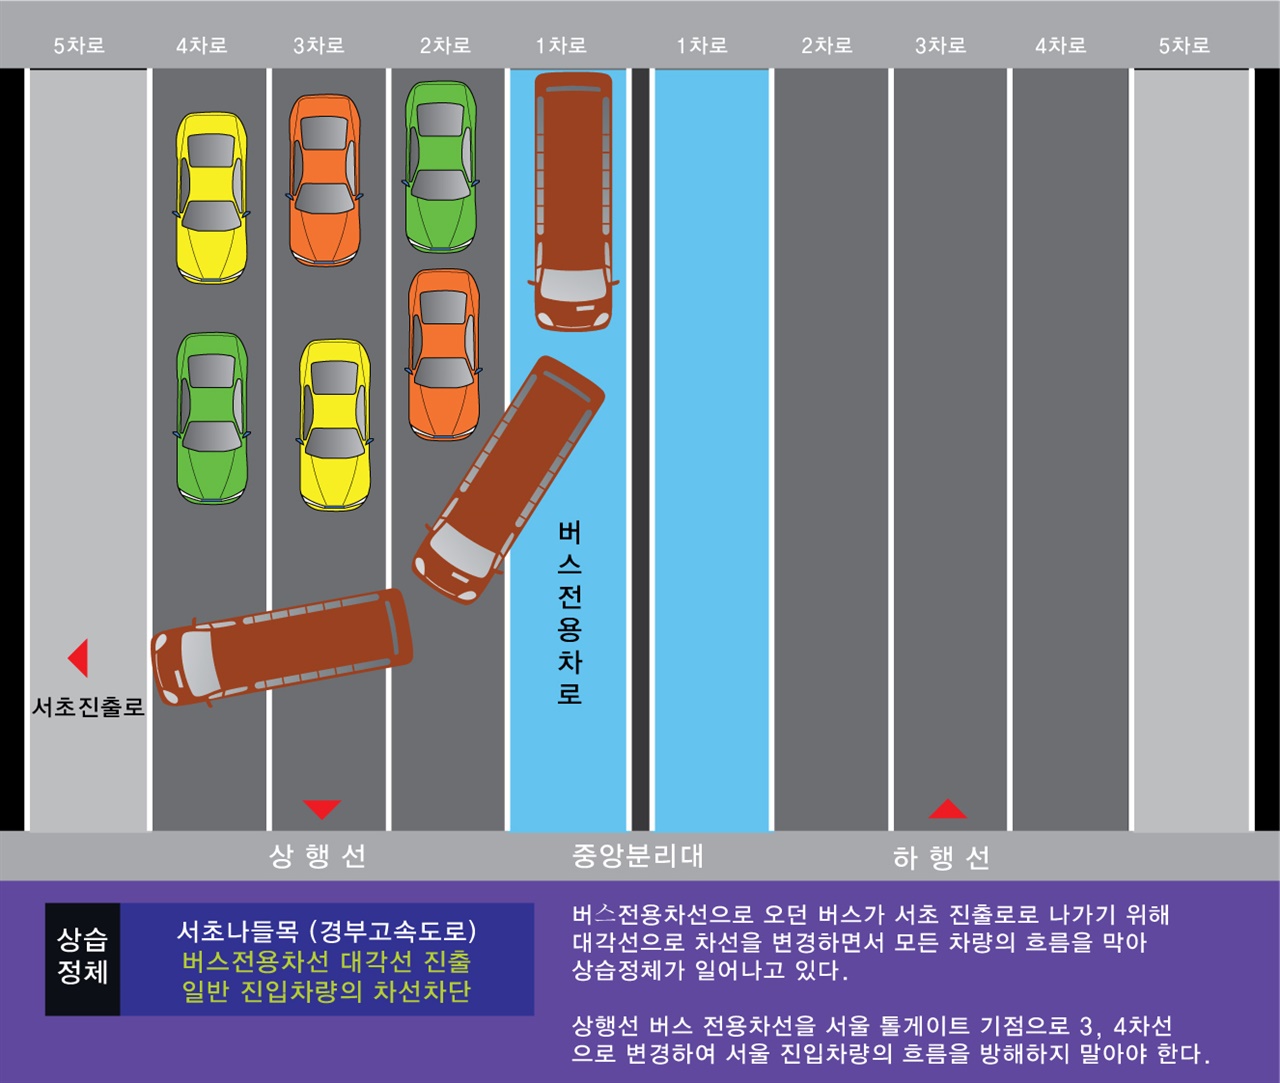 1차선의 버스 전용차선이 서초진출로를 통과하기 위해 대각선으로 차선을 변경하면서 생겨나는 병목현상이다. 진행 차량의 운행을 방해하는 원인이 된다.